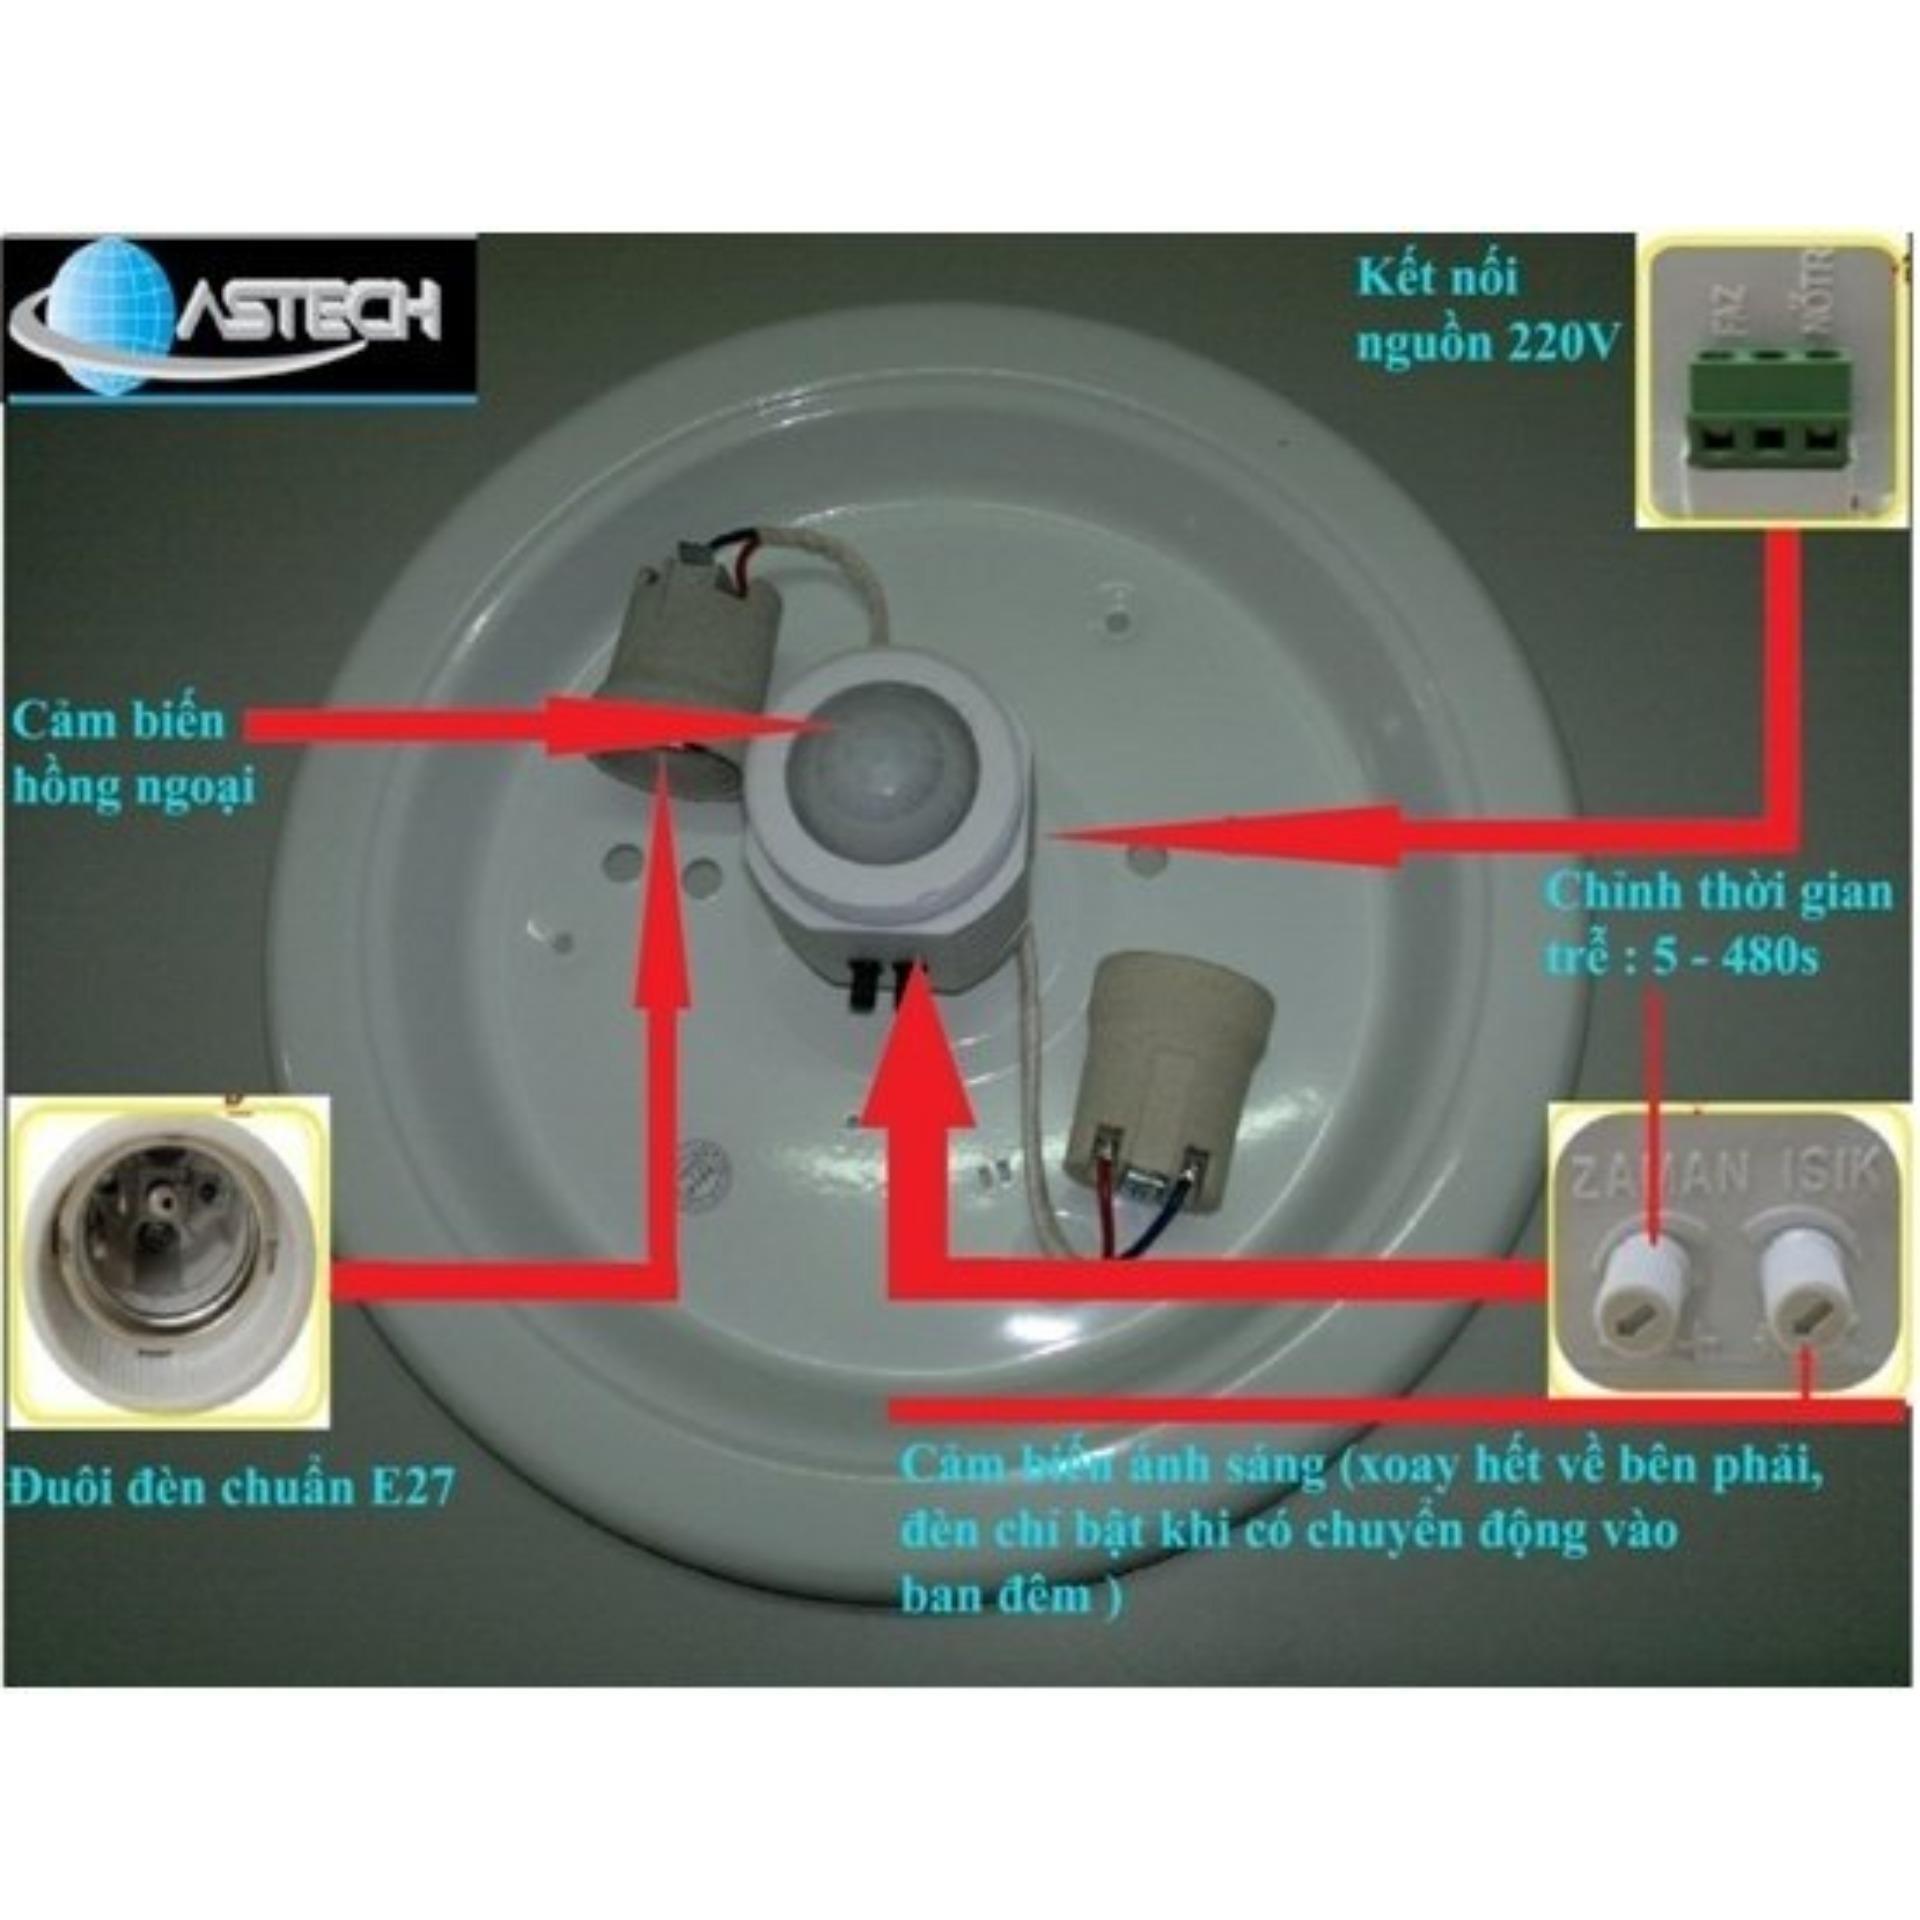 Đèn Cảm ứng Astech tự động bật tắt chống trộm hiệu quả (Trắng)